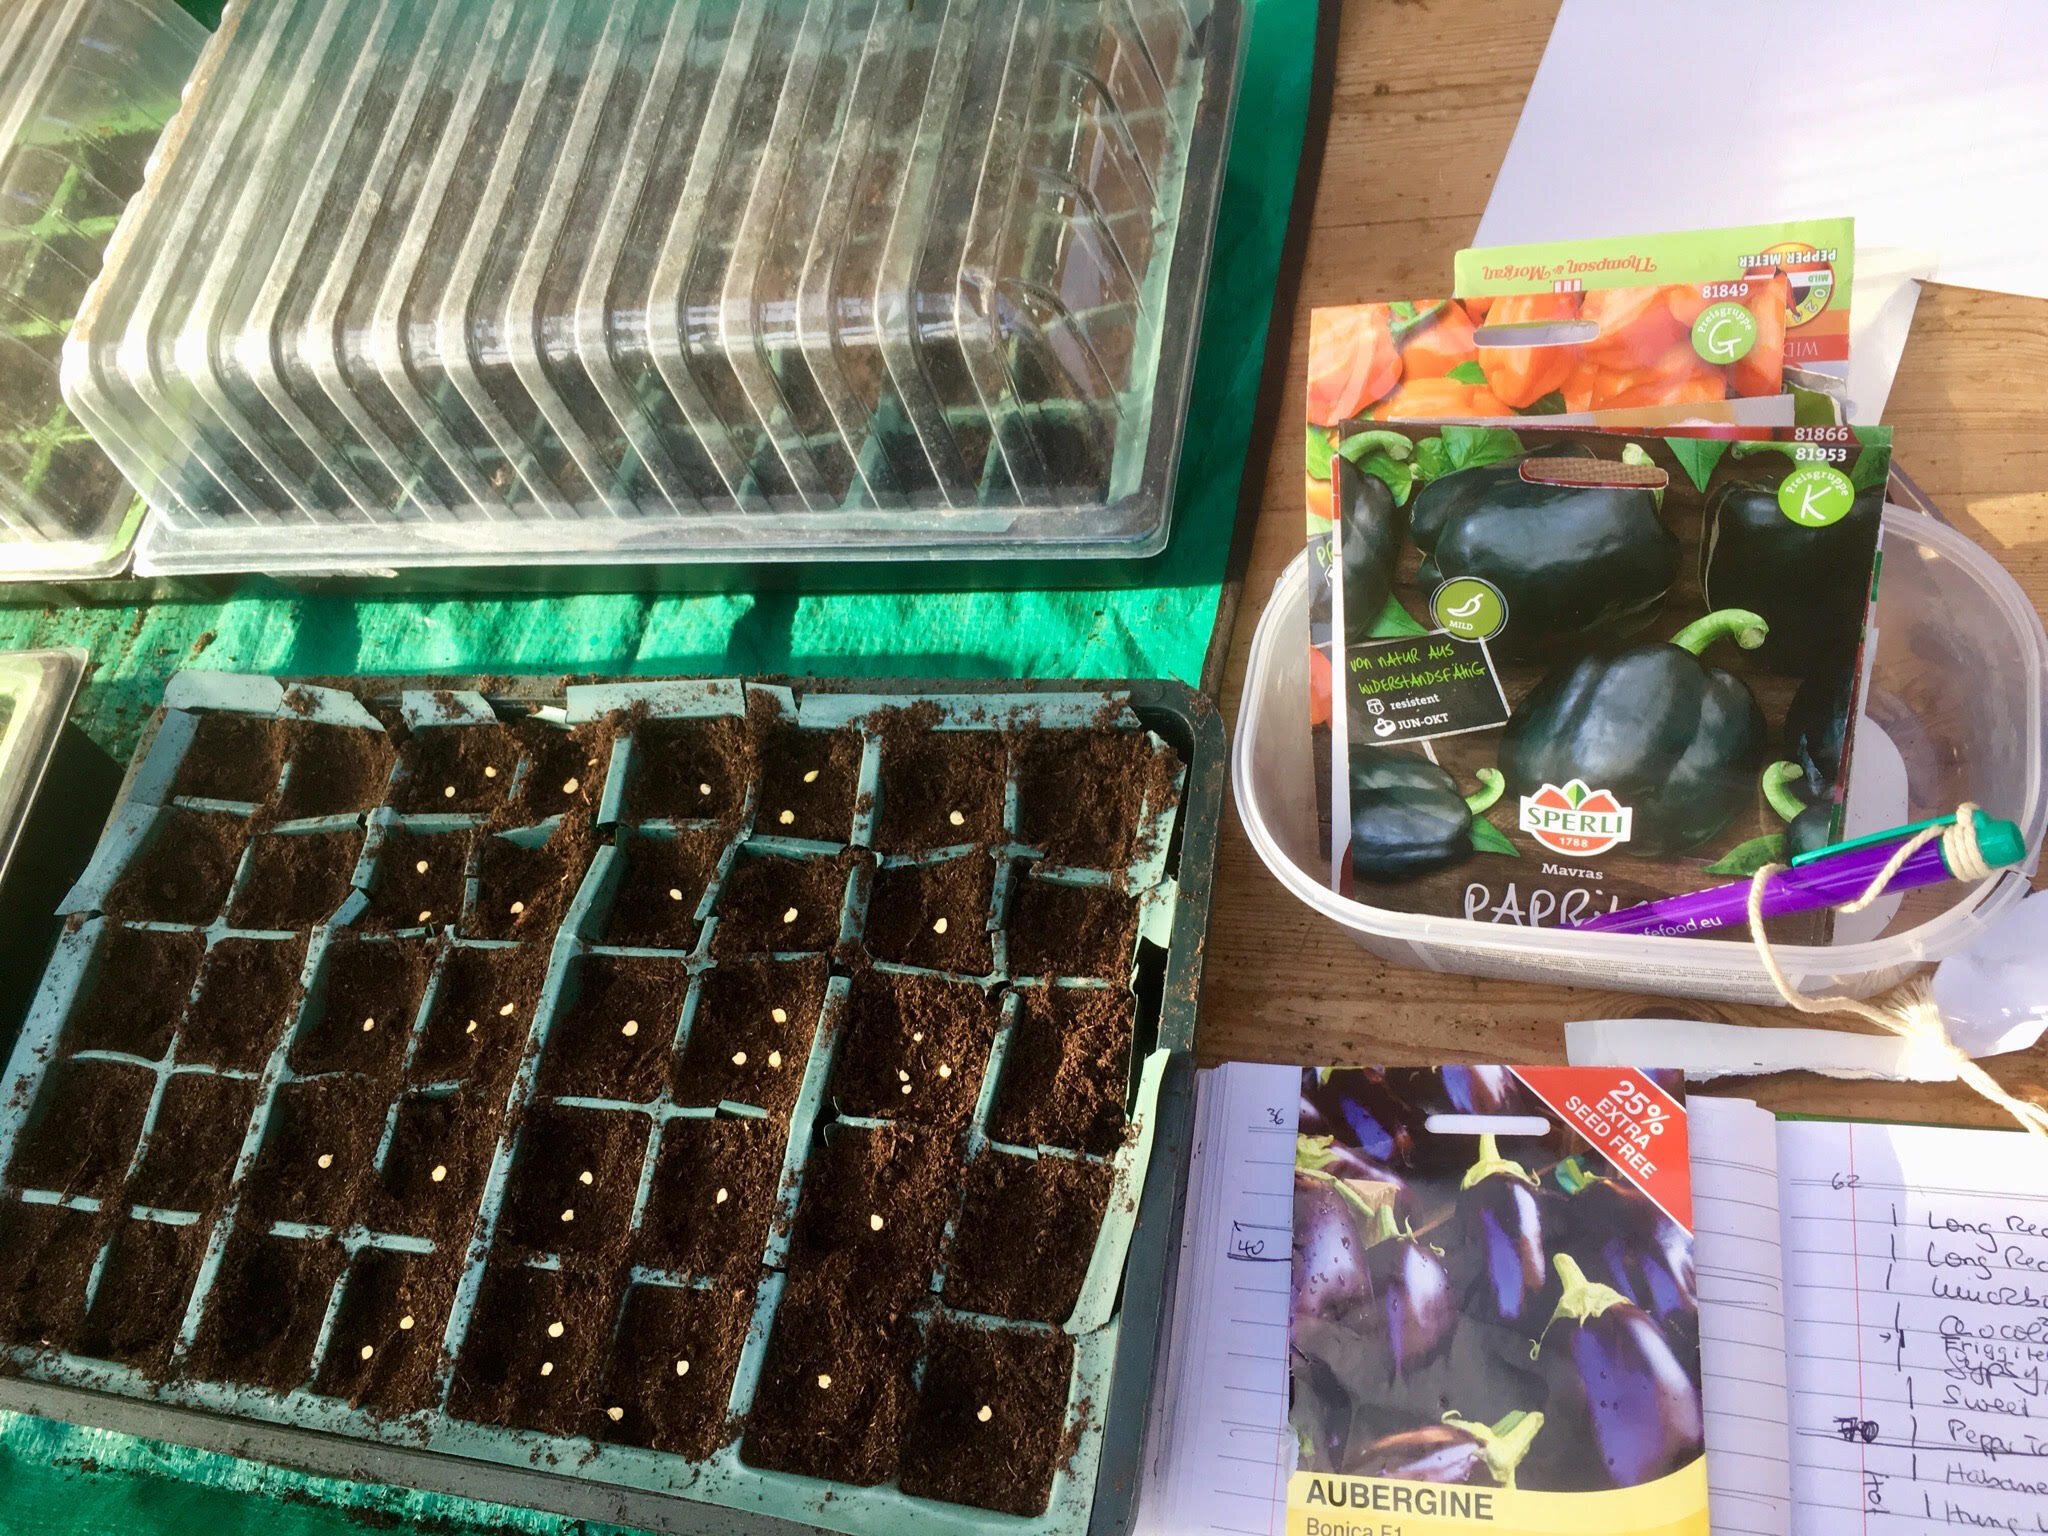 sowing aubergines.jpg